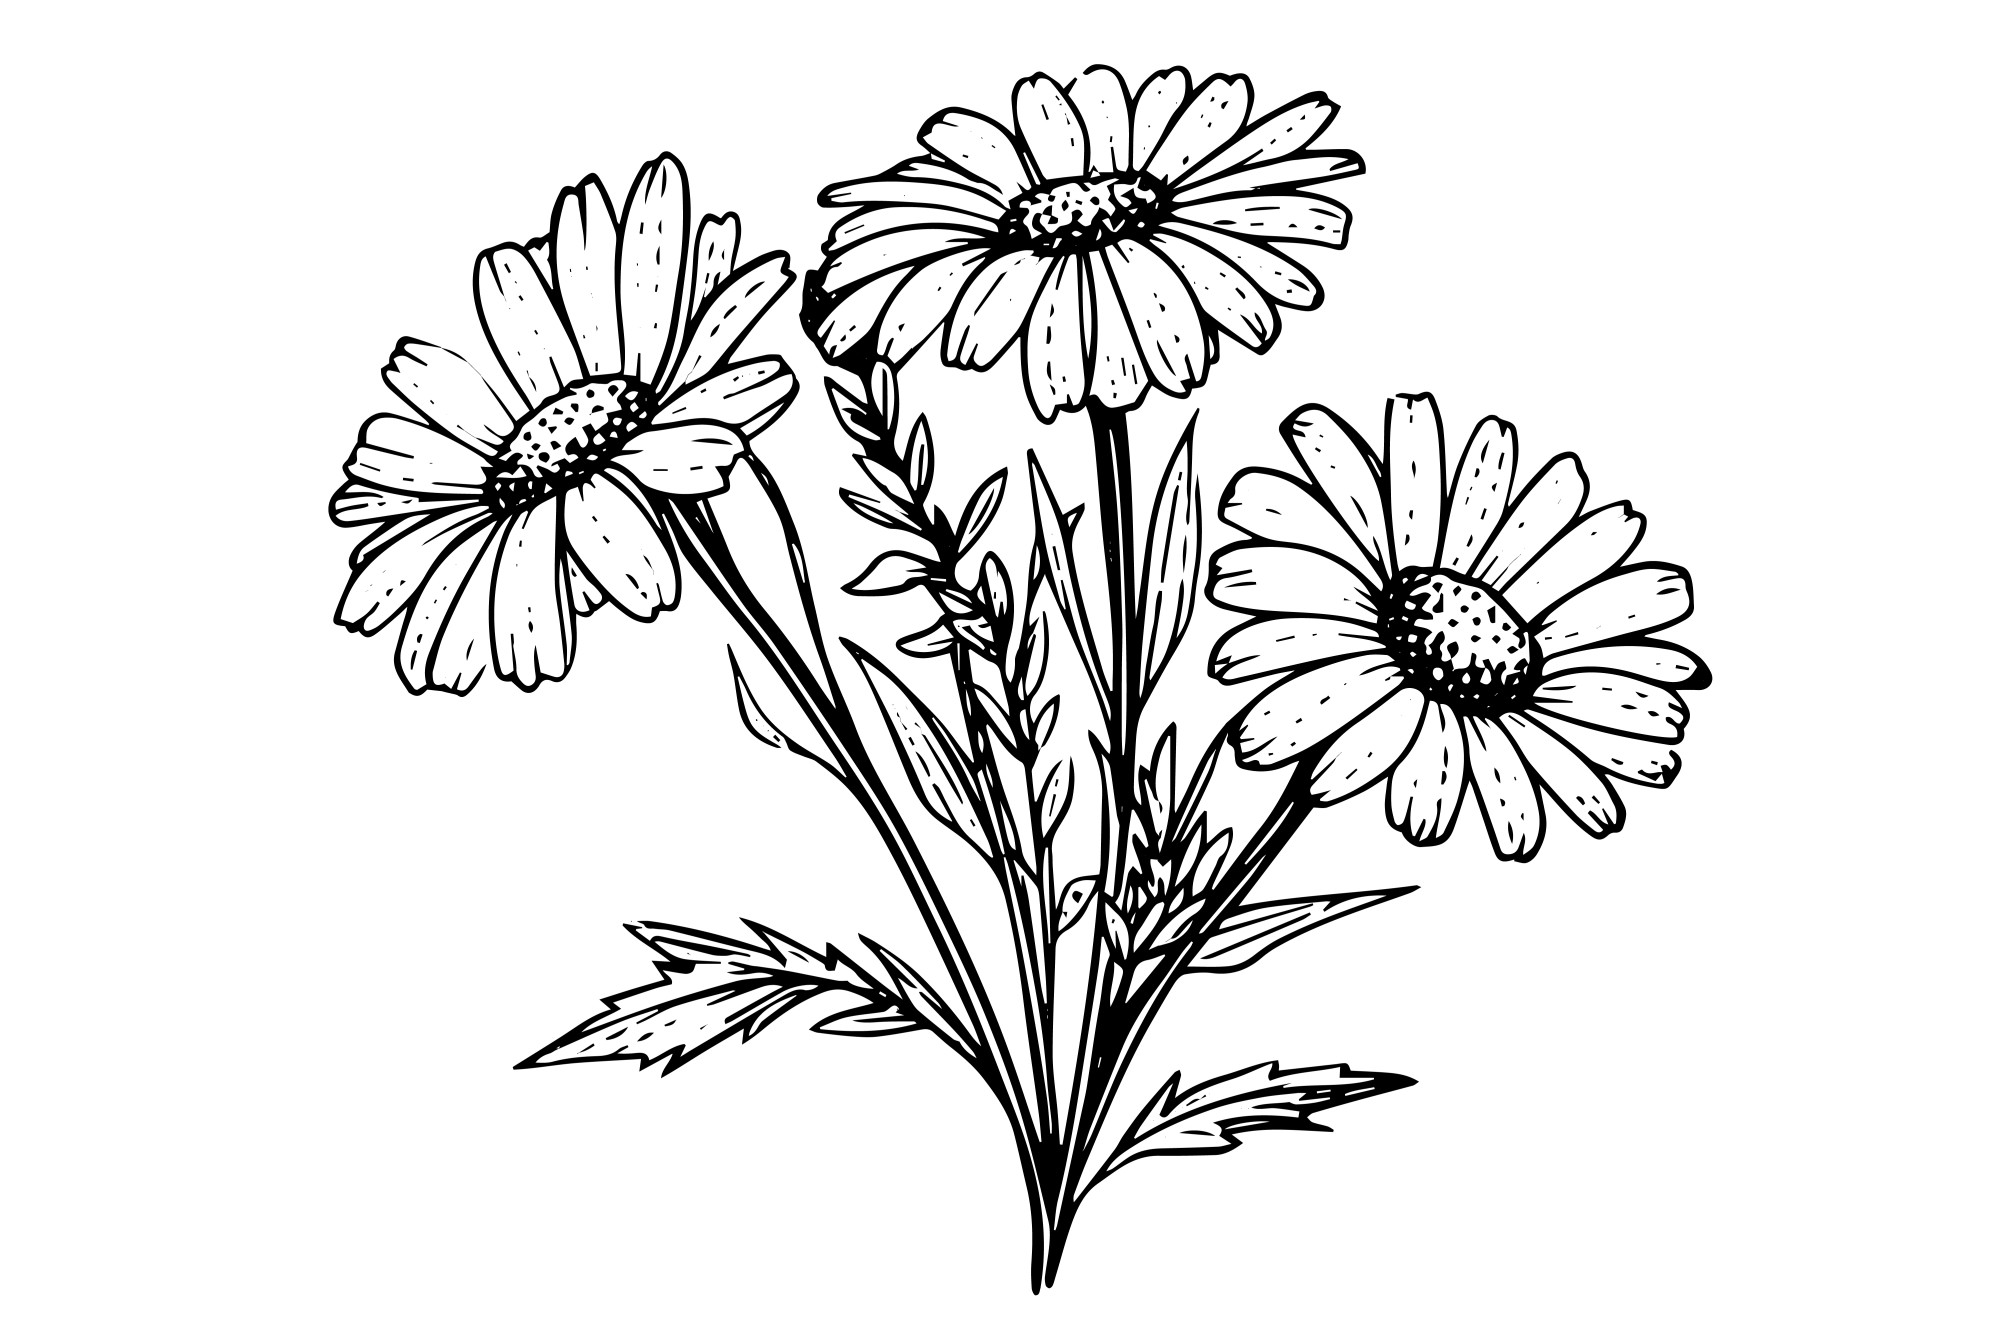 Раскраска для детей: цветы ромашки на лугу